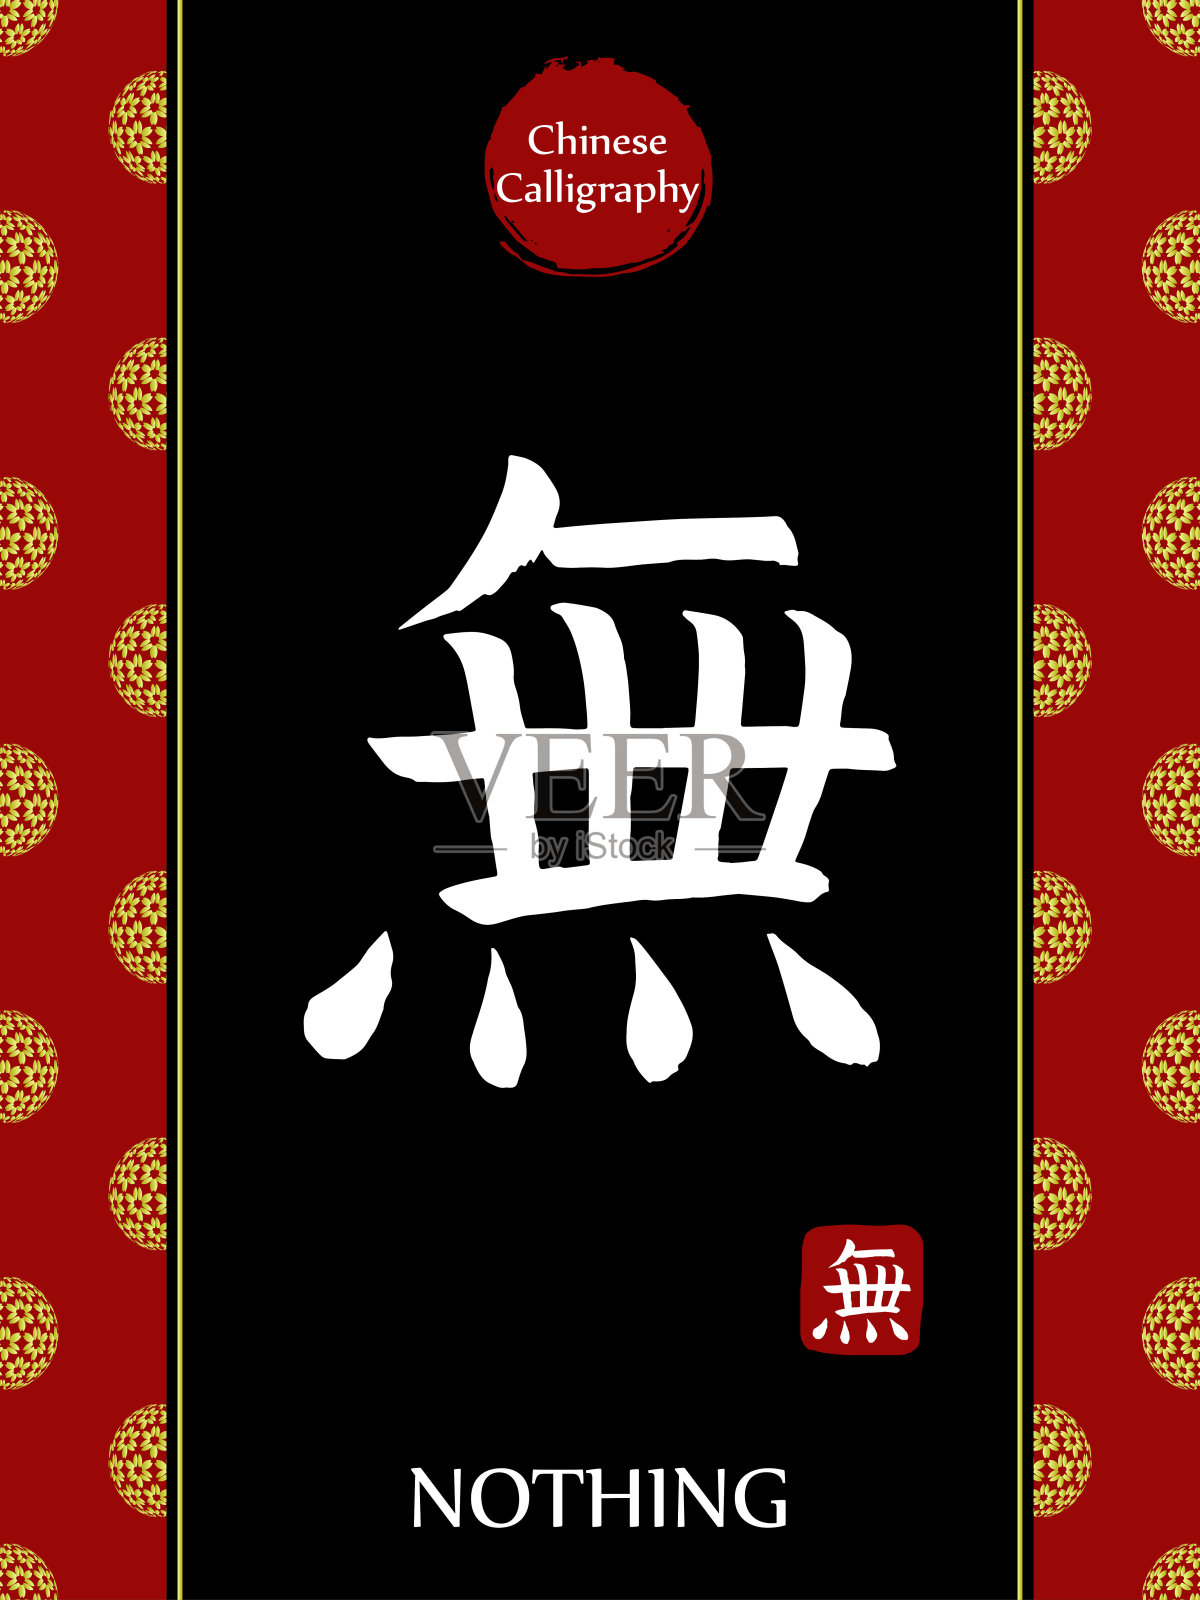 中国书法象形文字翻译:无。亚洲金花球农历新年图案。向量中国符号在黑色背景。手绘图画文字。毛笔书法插画图片素材